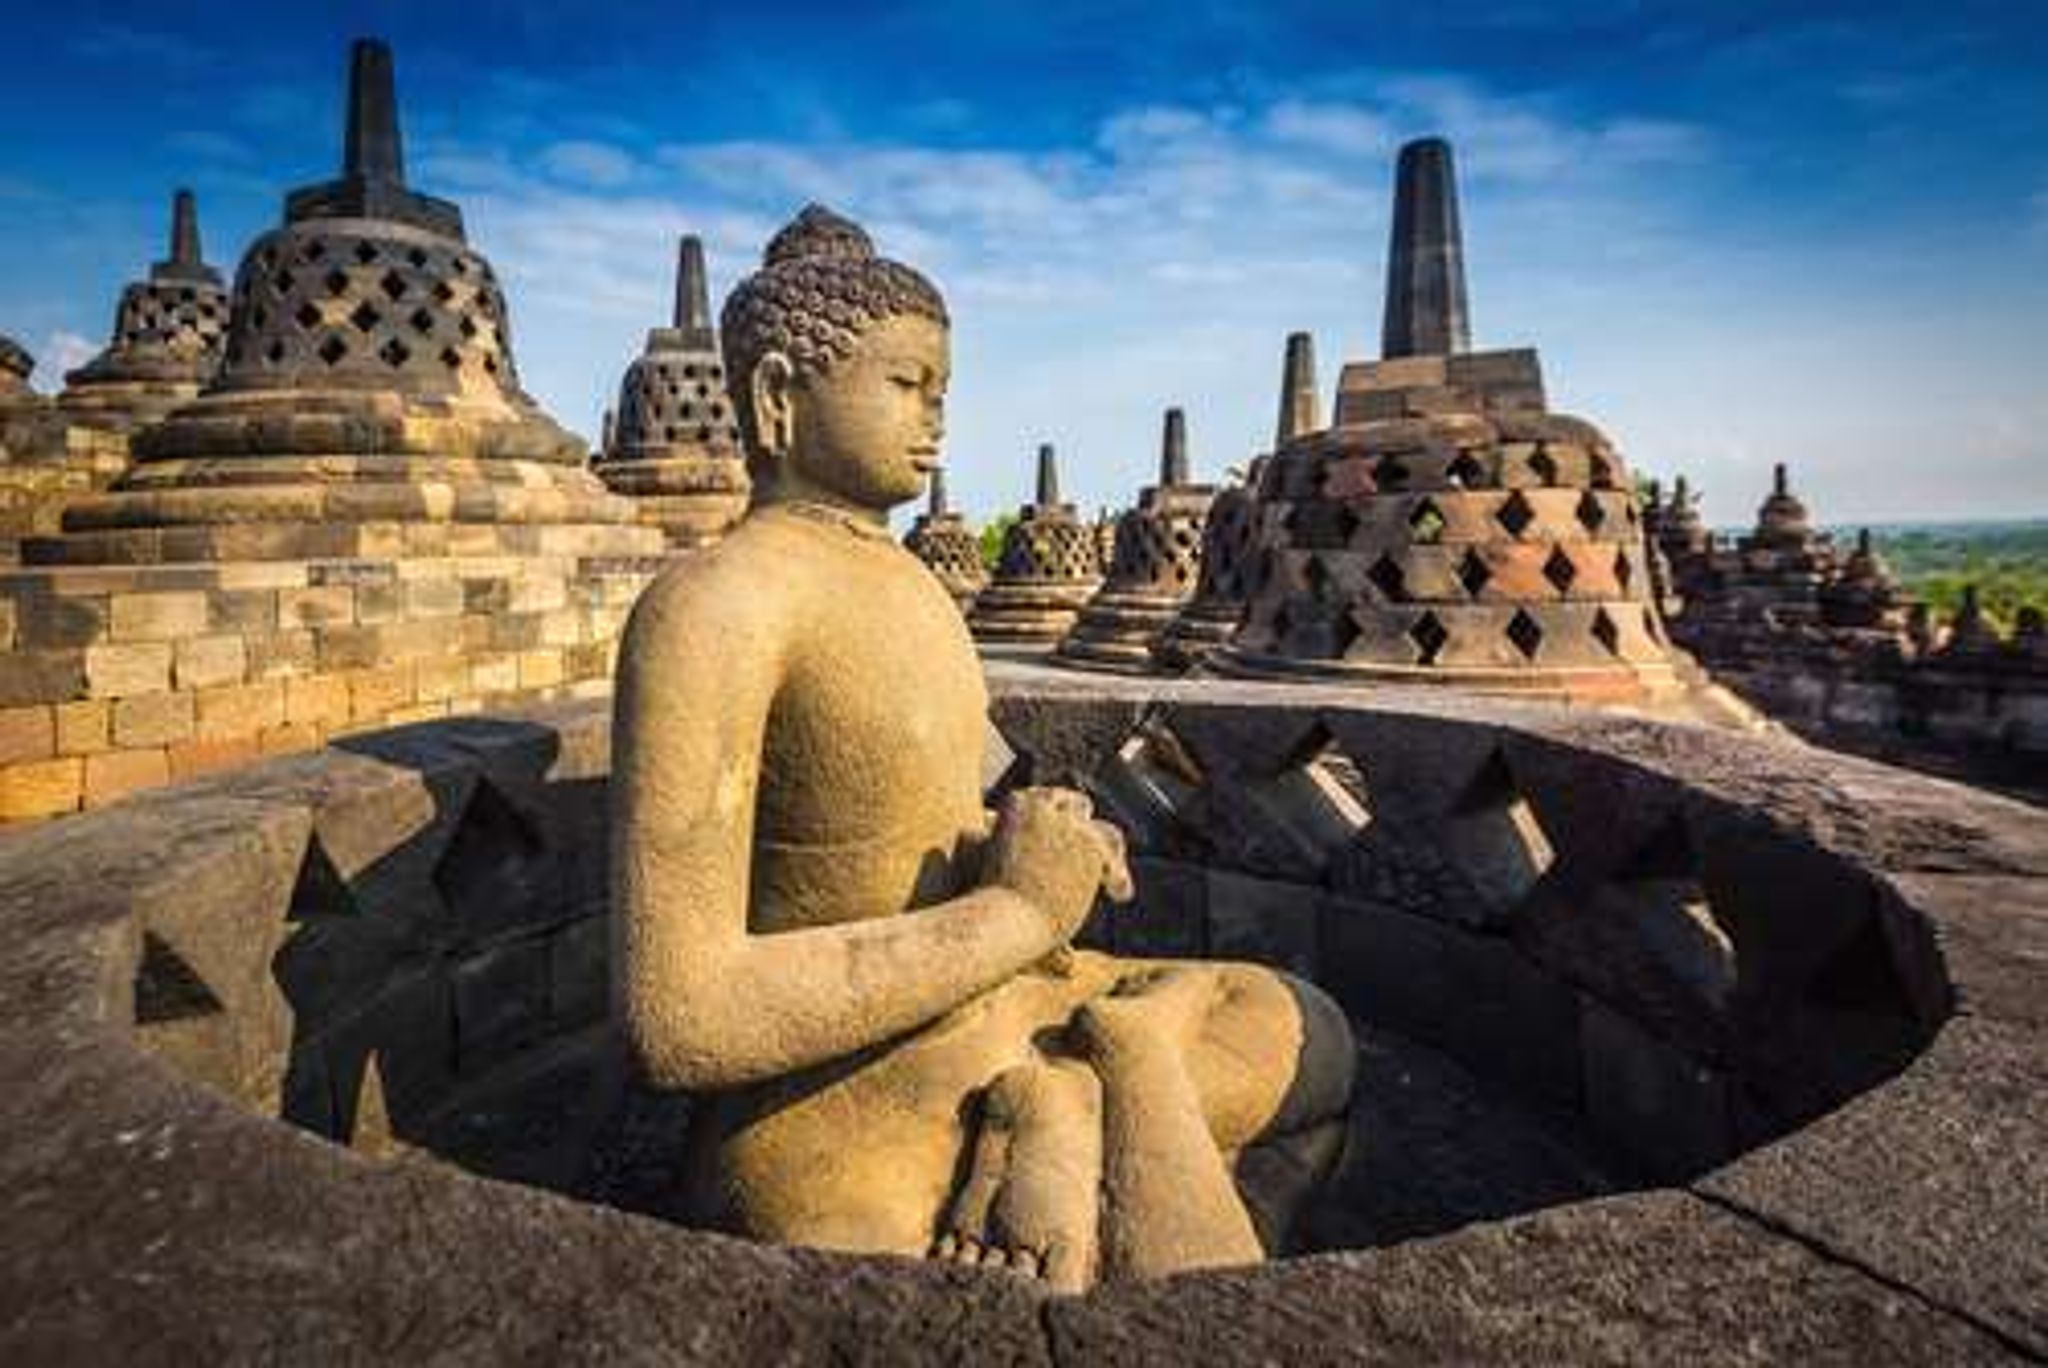 Indonesië Java Borobudur Temple Buddha statue